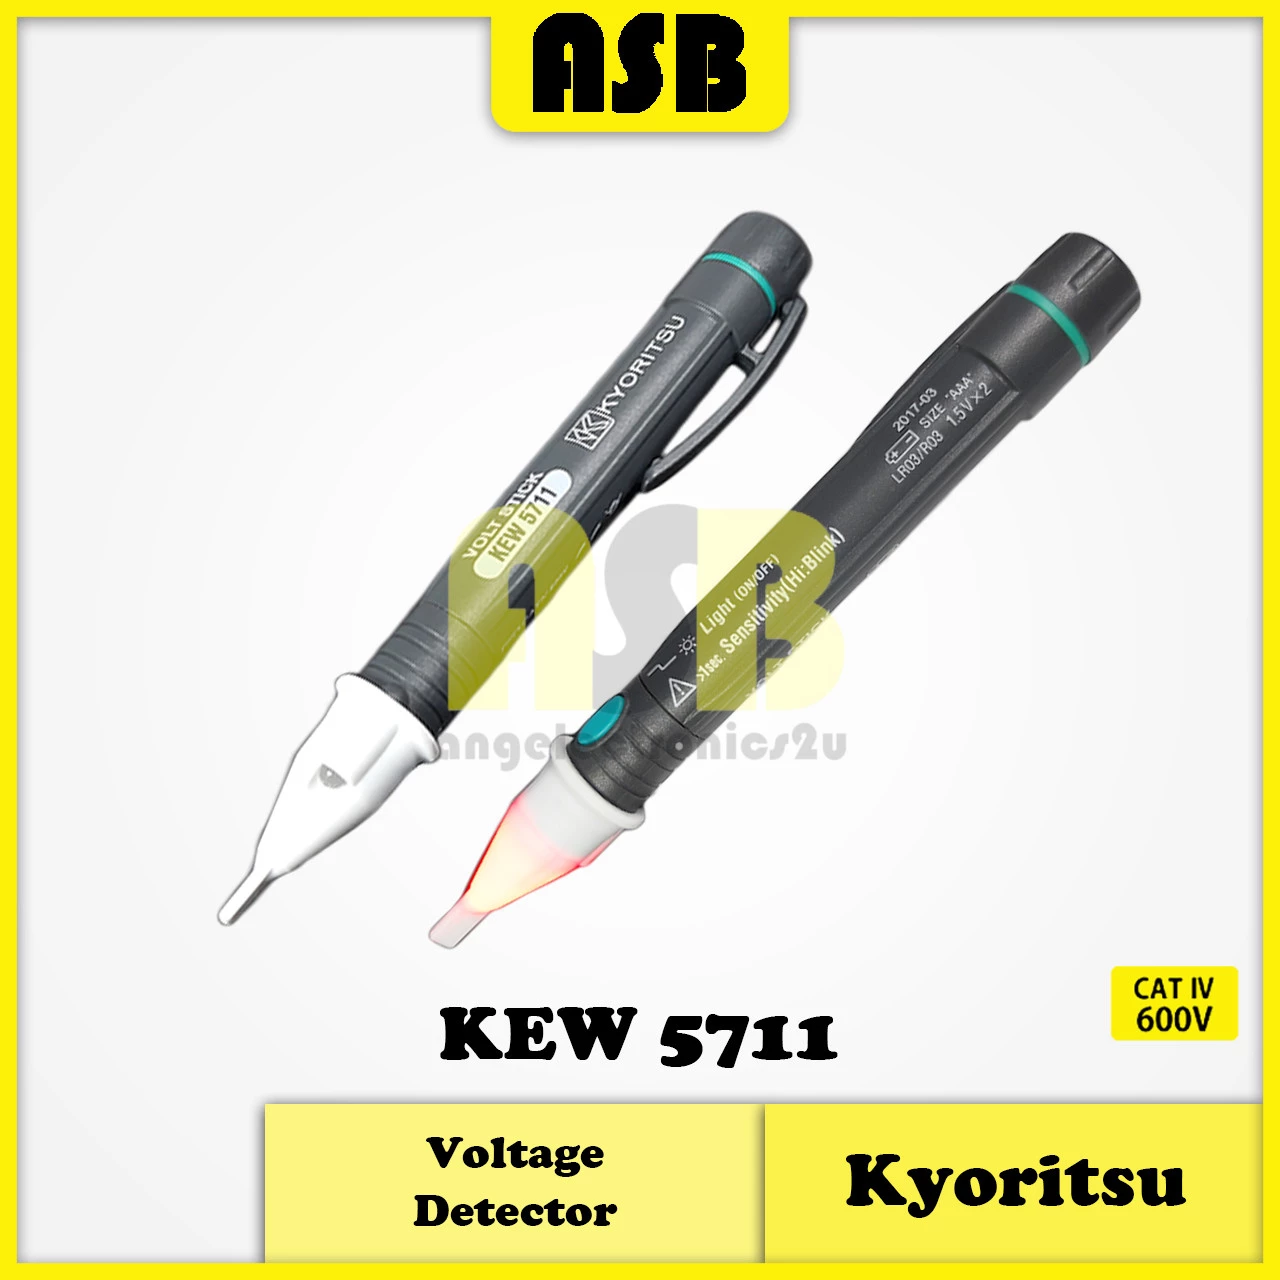 Kyoritsu 5711 Voltage Detector (362007040)